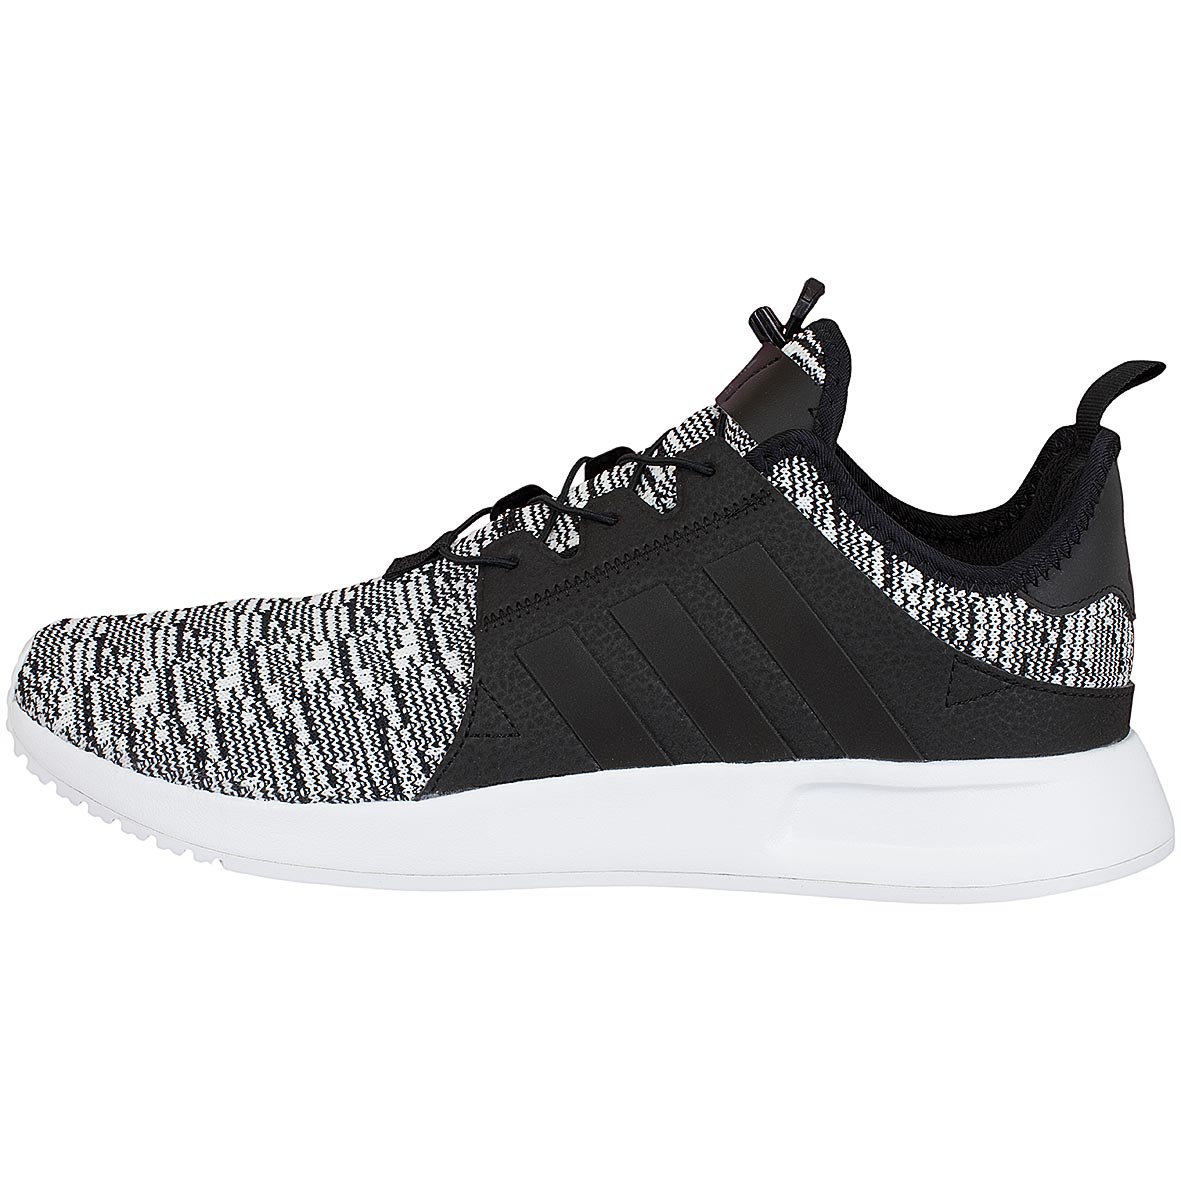 ☆ Adidas Originals Sneaker X PLR schwarz/schwarz/weiß - hier bestellen!